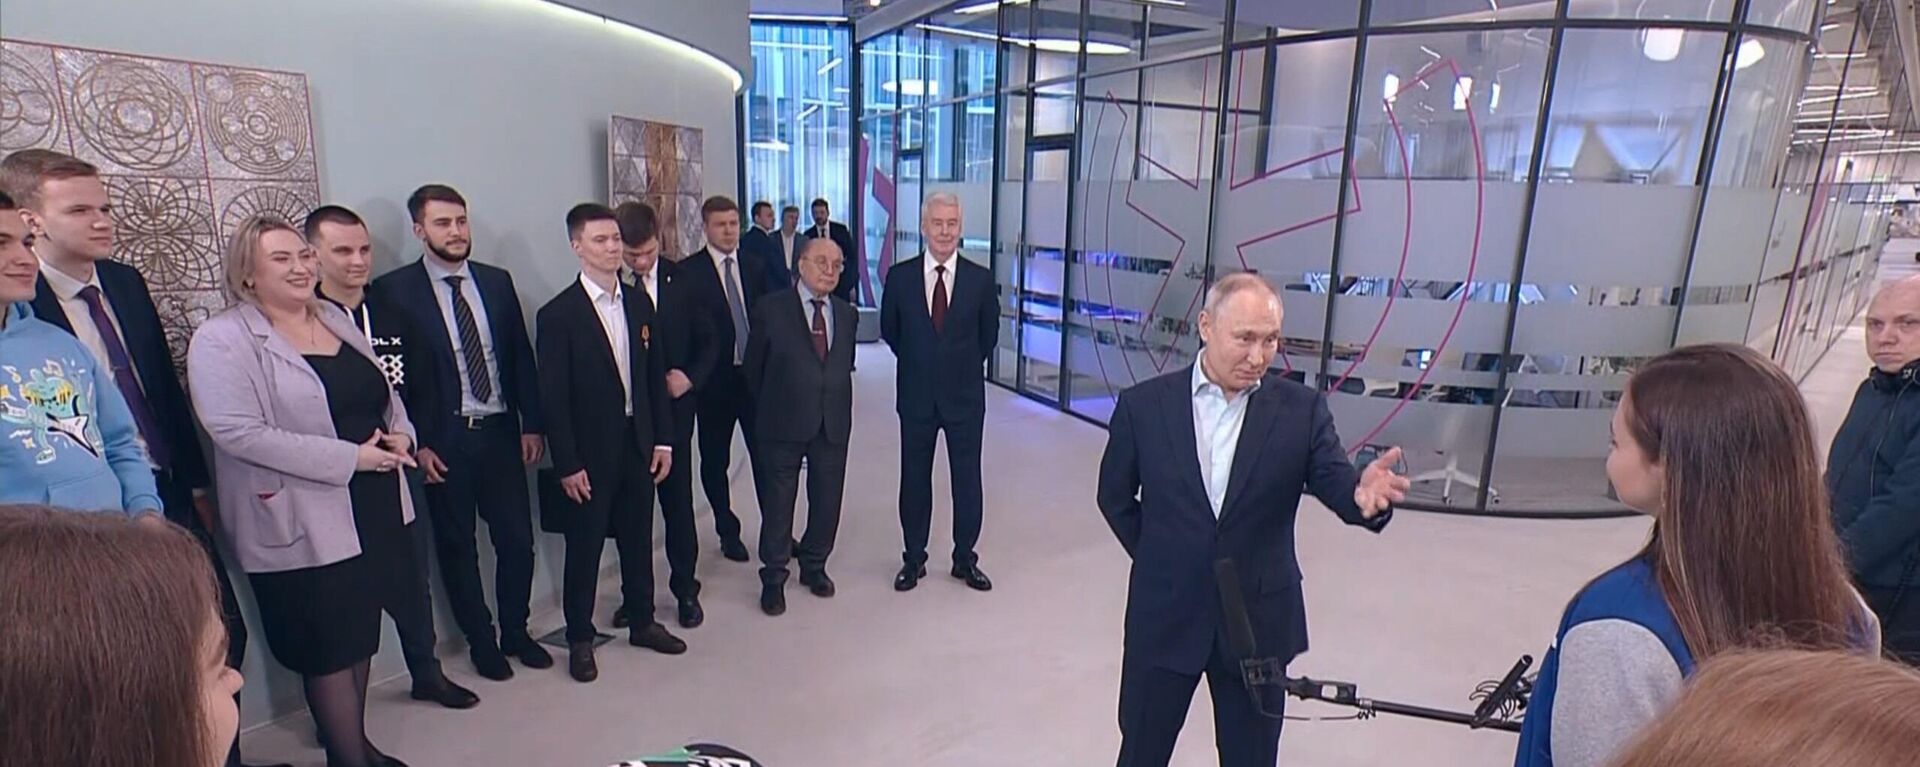 Vladimir Poutine a échangé avec des jeunes de l'Université d'Etat de Moscou, le 25 janvier 2023 - Sputnik Afrique, 1920, 25.01.2023